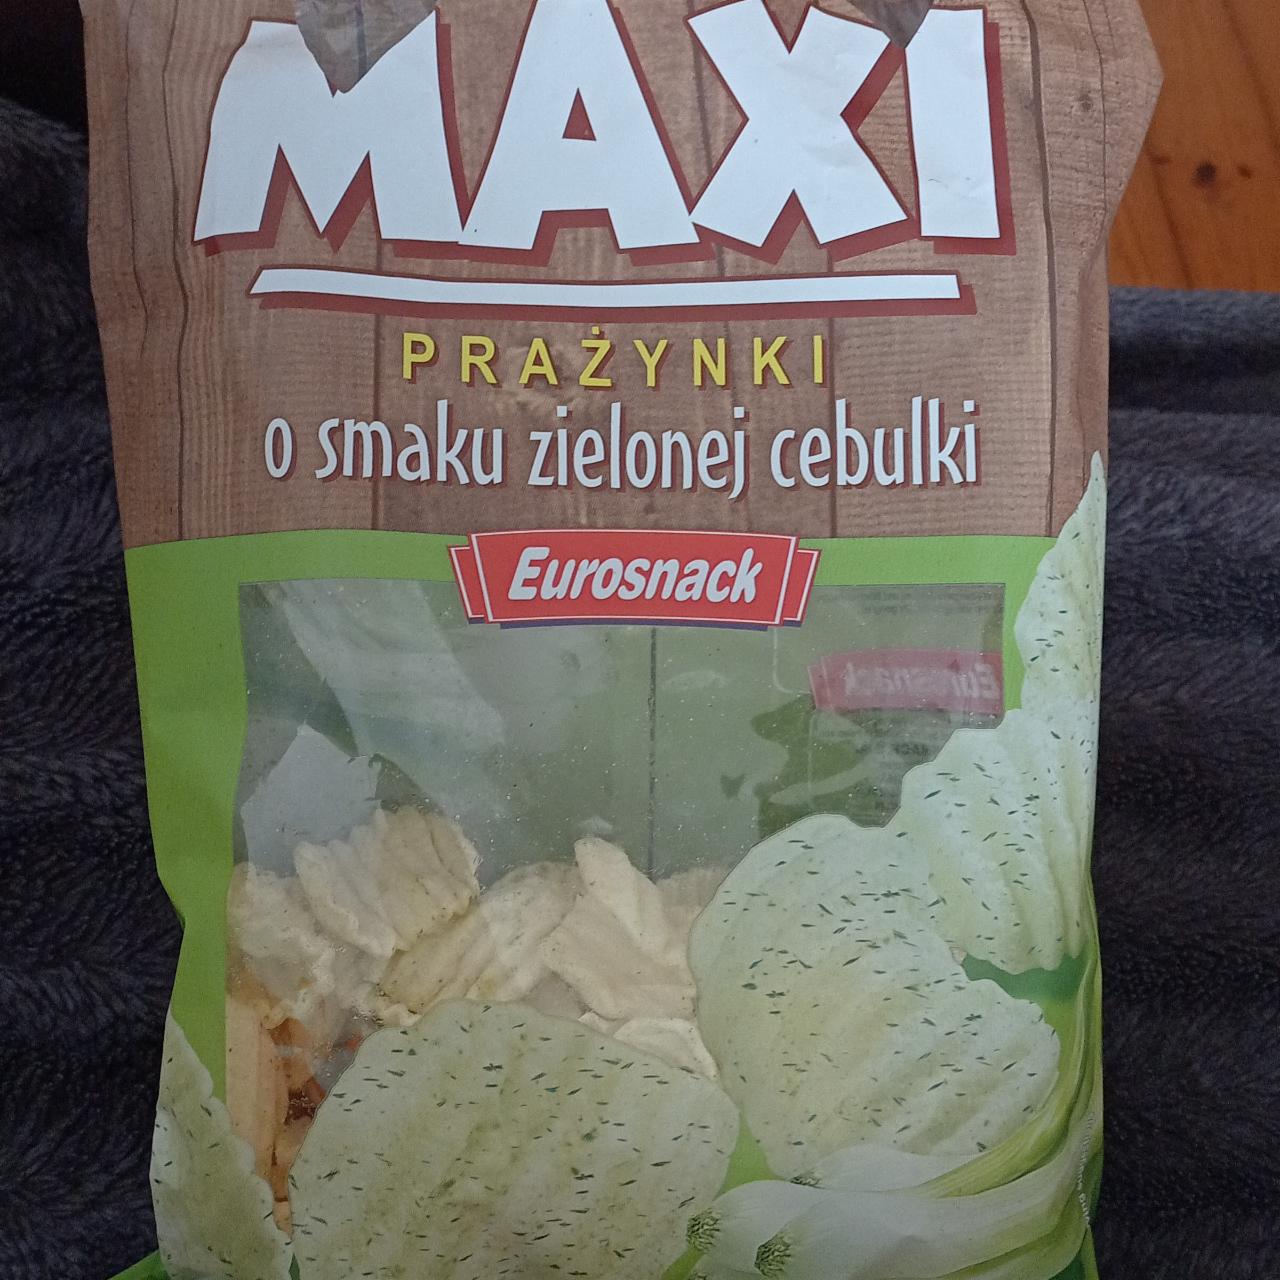 Zdjęcia - MAXI prażynki o smaku zielonej cebulki Eurosnack